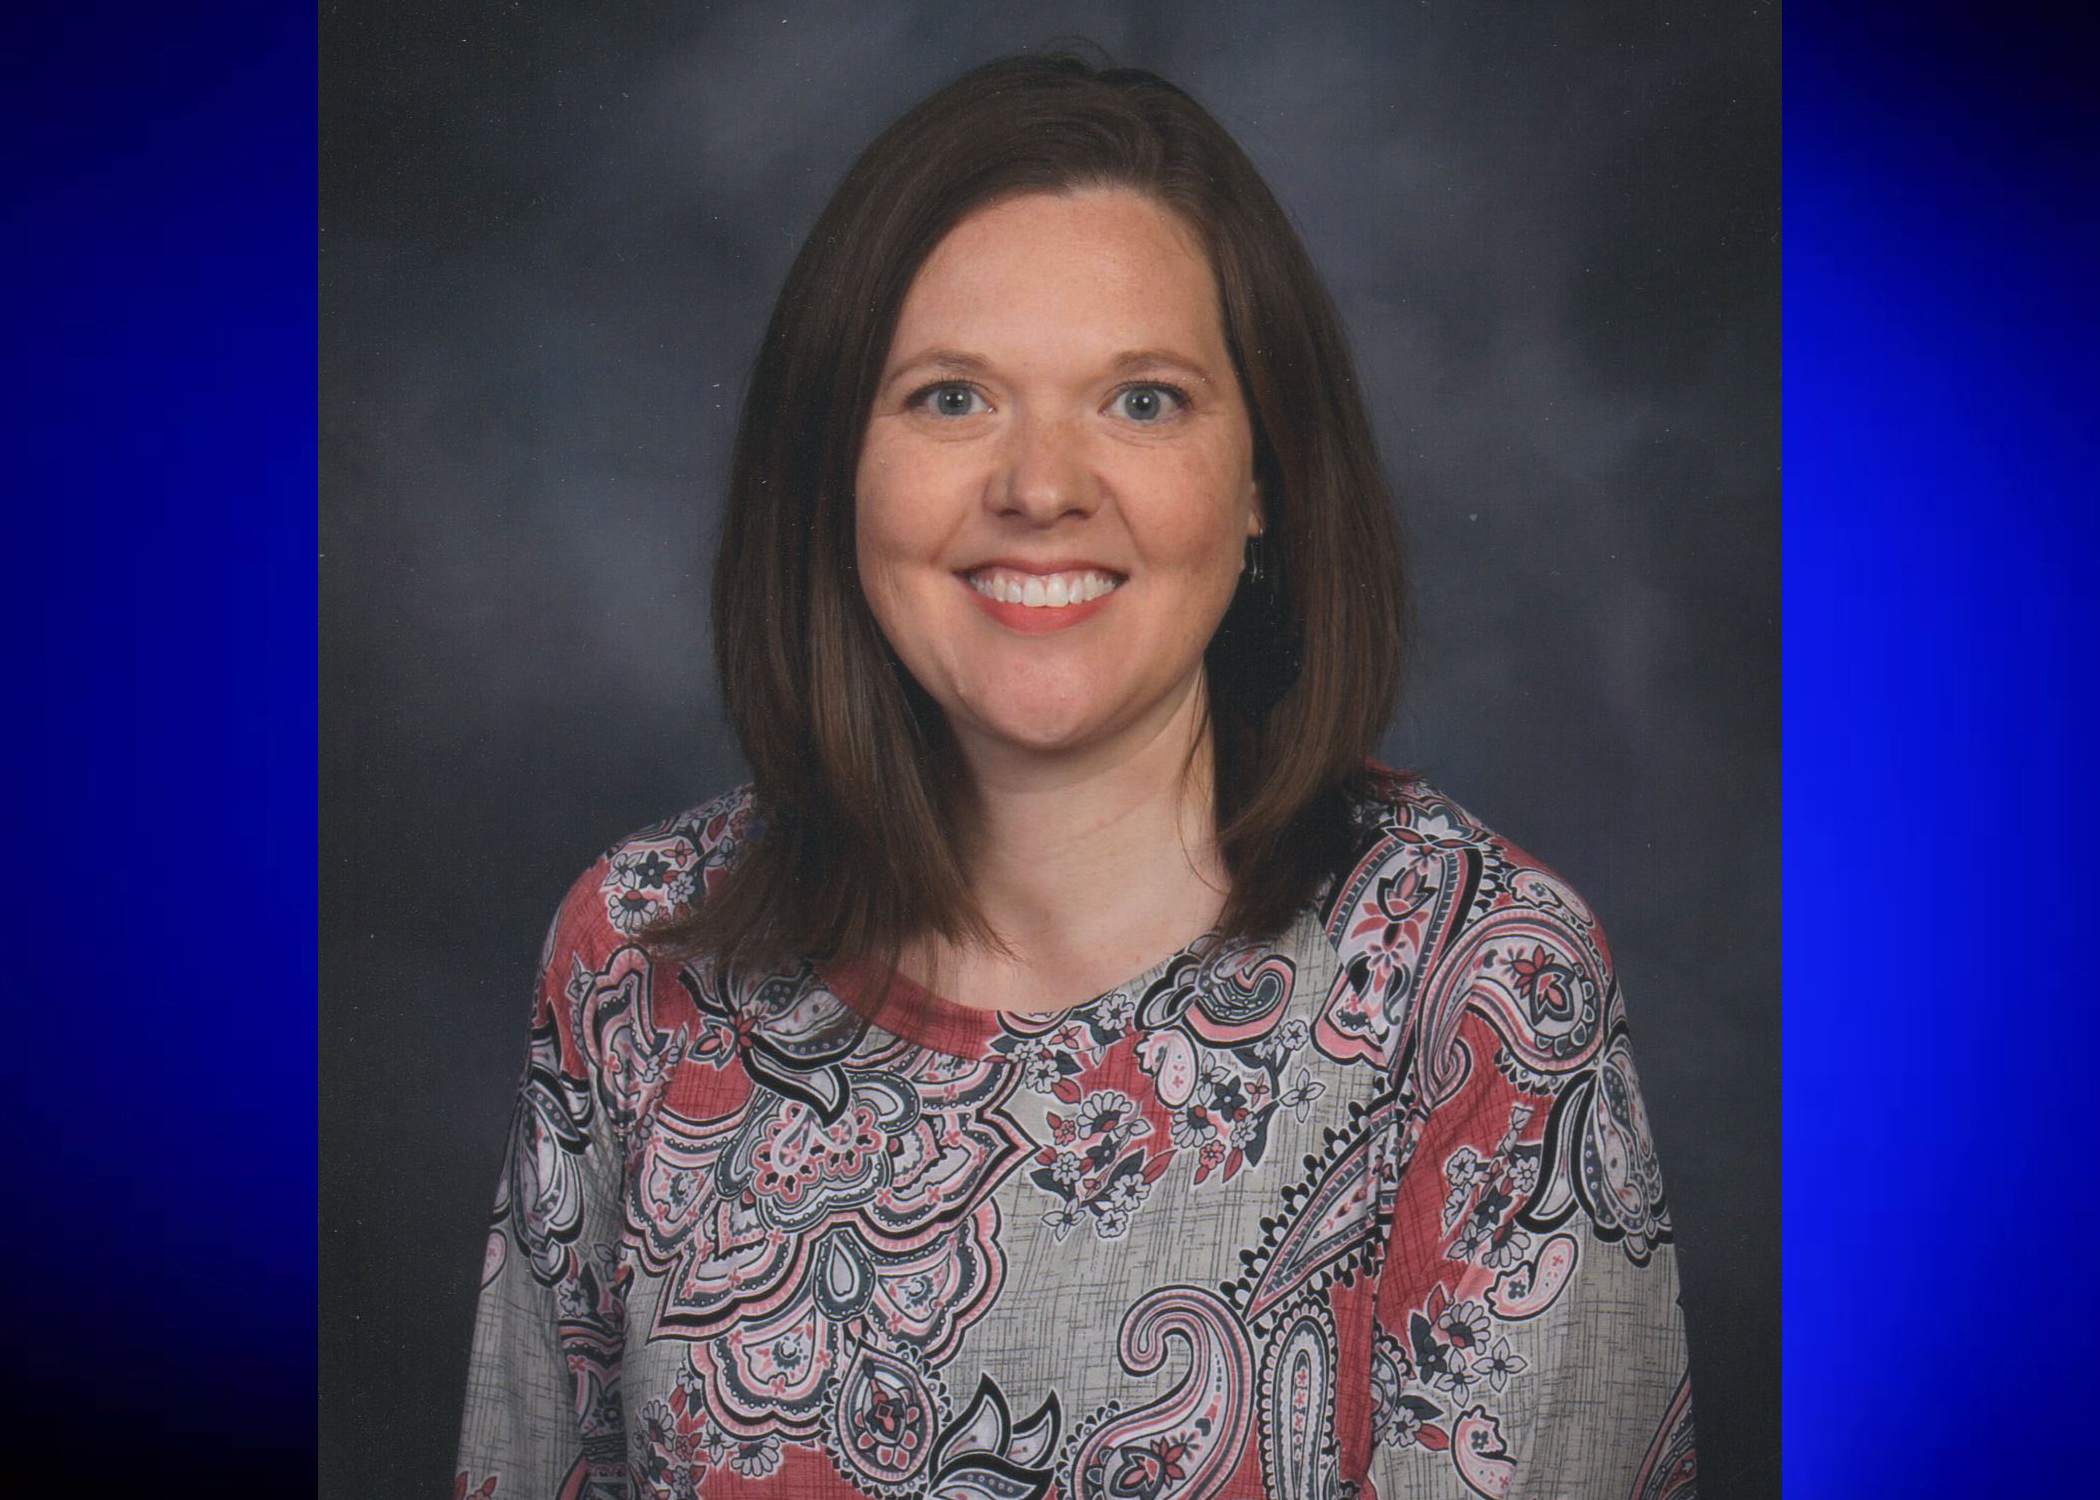 Chalkville Elementary teacher named Jefferson County's Elementary Teacher of the Year